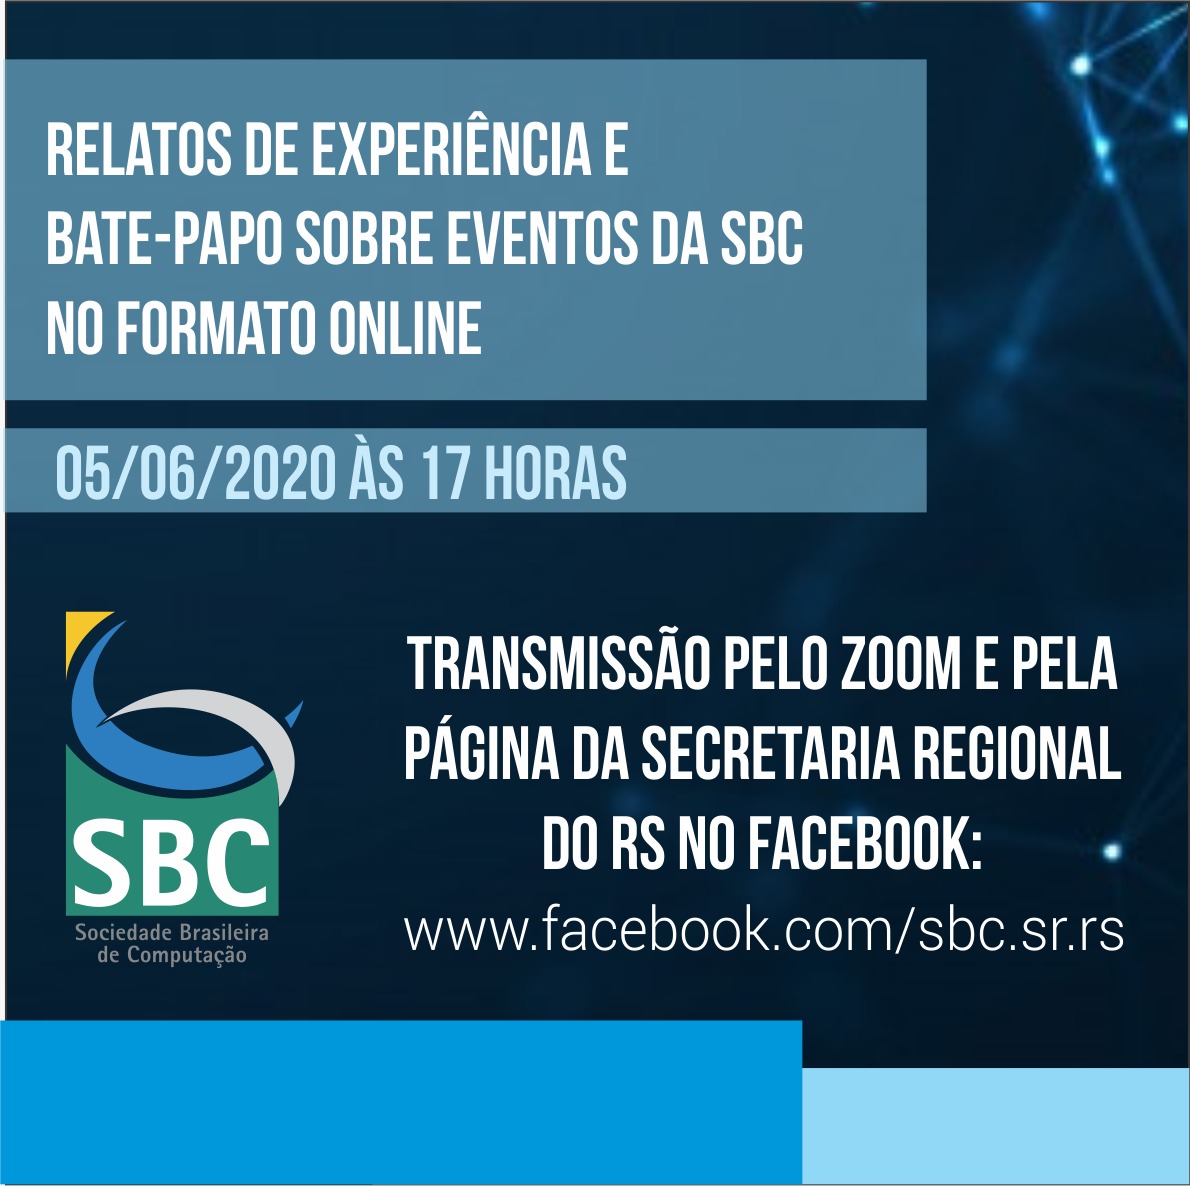 Banner da transmissão - relatos de experiência e bate-papo sobre eventos da sbc no formato online